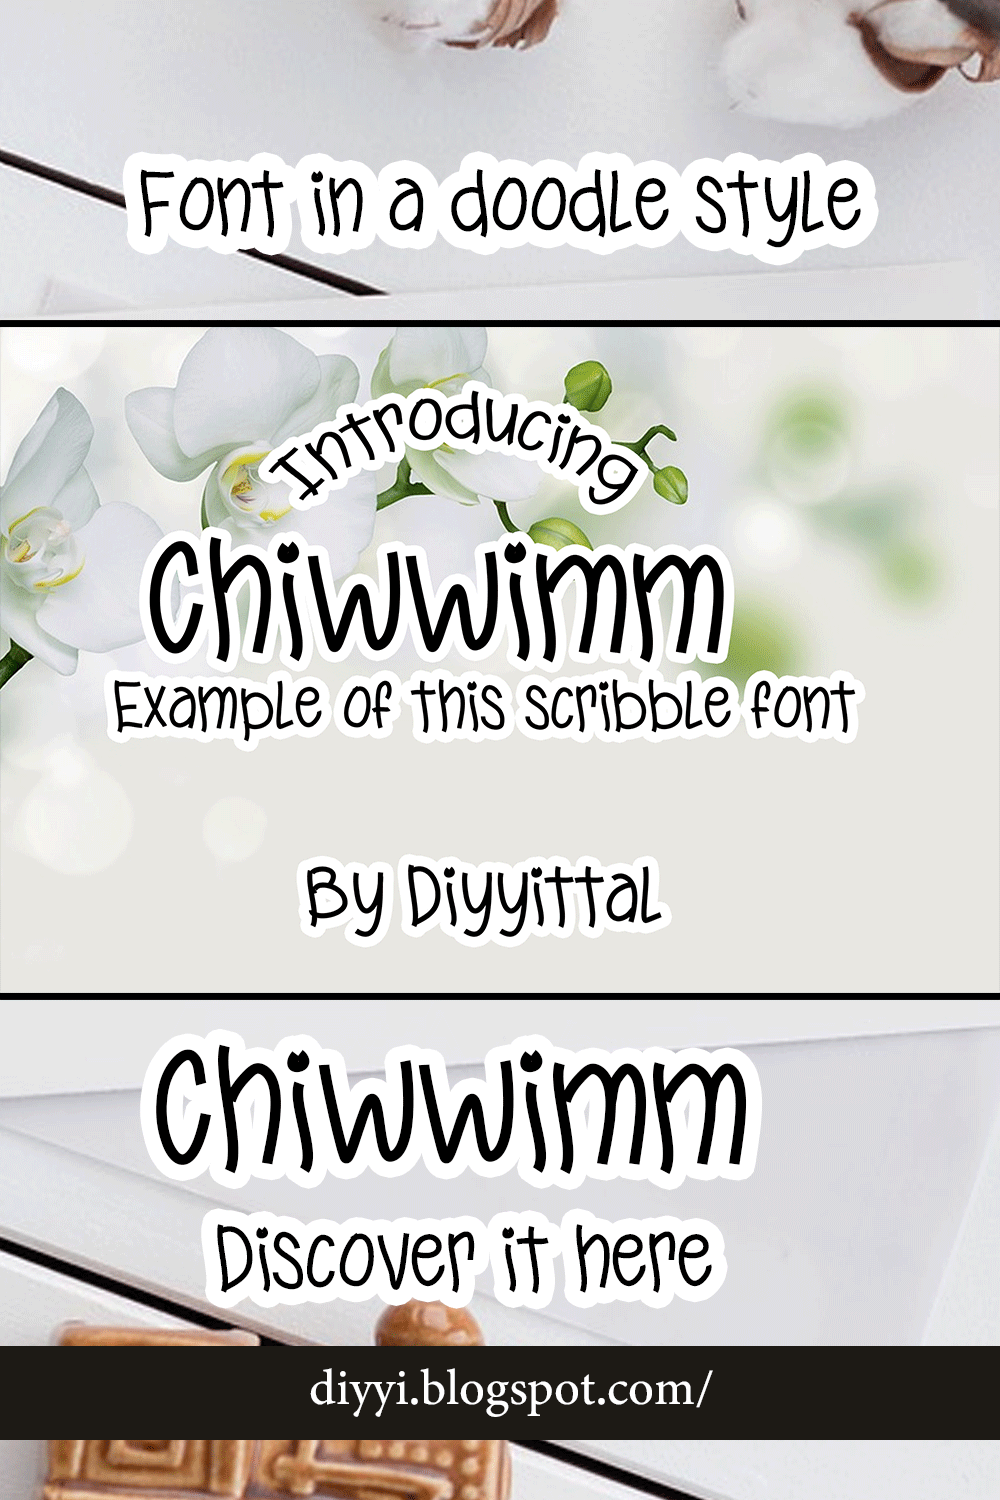 Chiwwimm